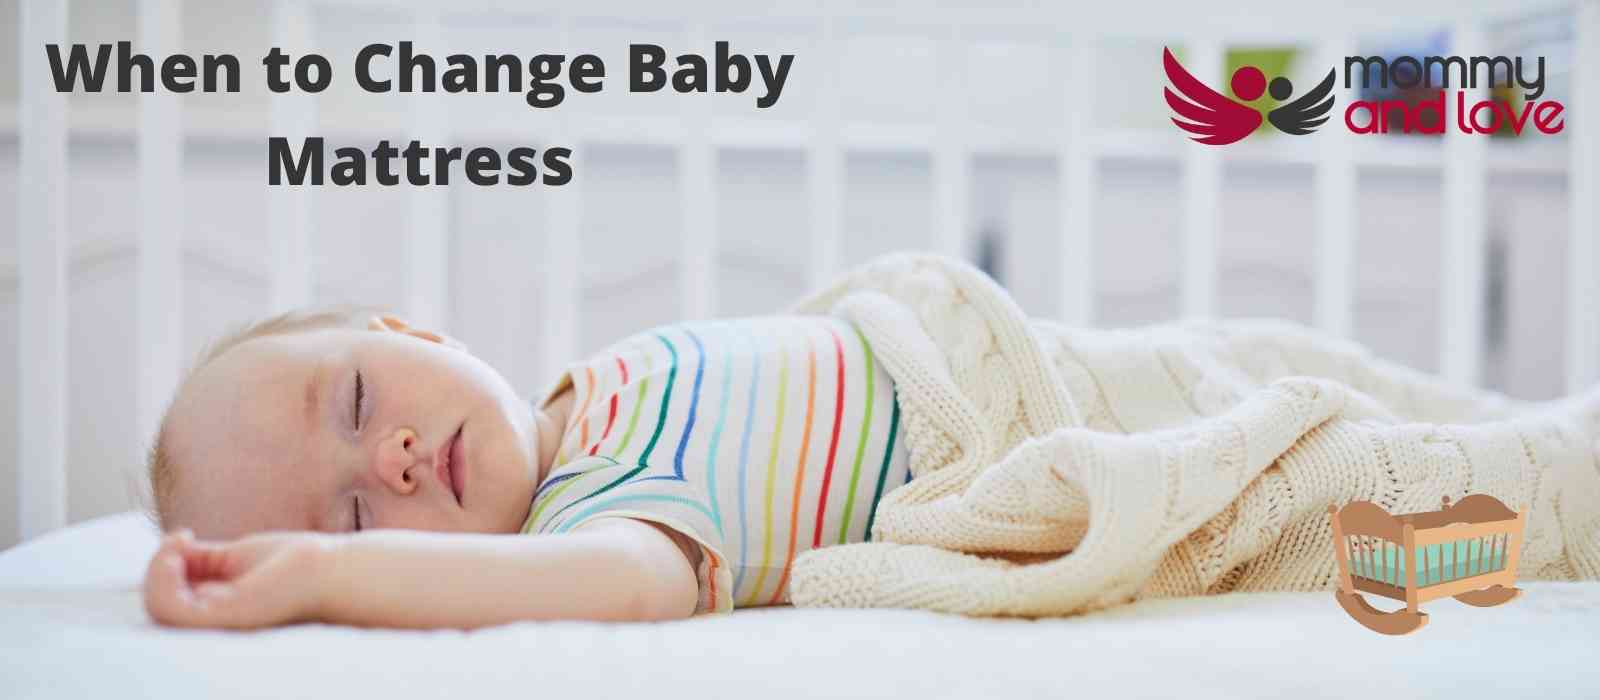 When to Change Baby Mattress